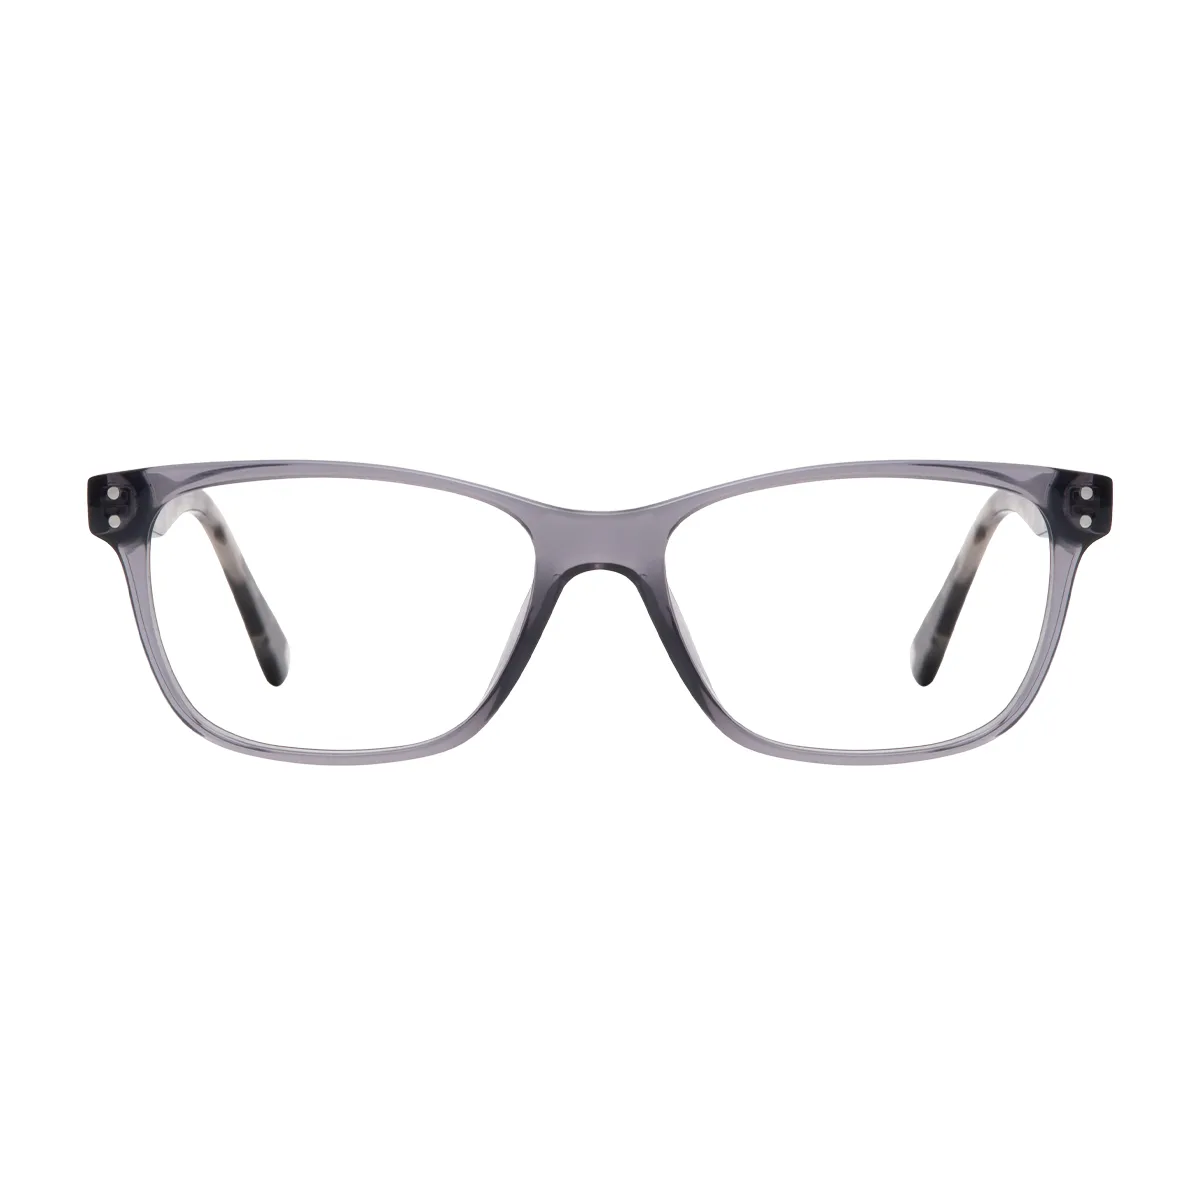 Josh - Rectangle Tortoiseshell-Gray Glasses for Men & Women